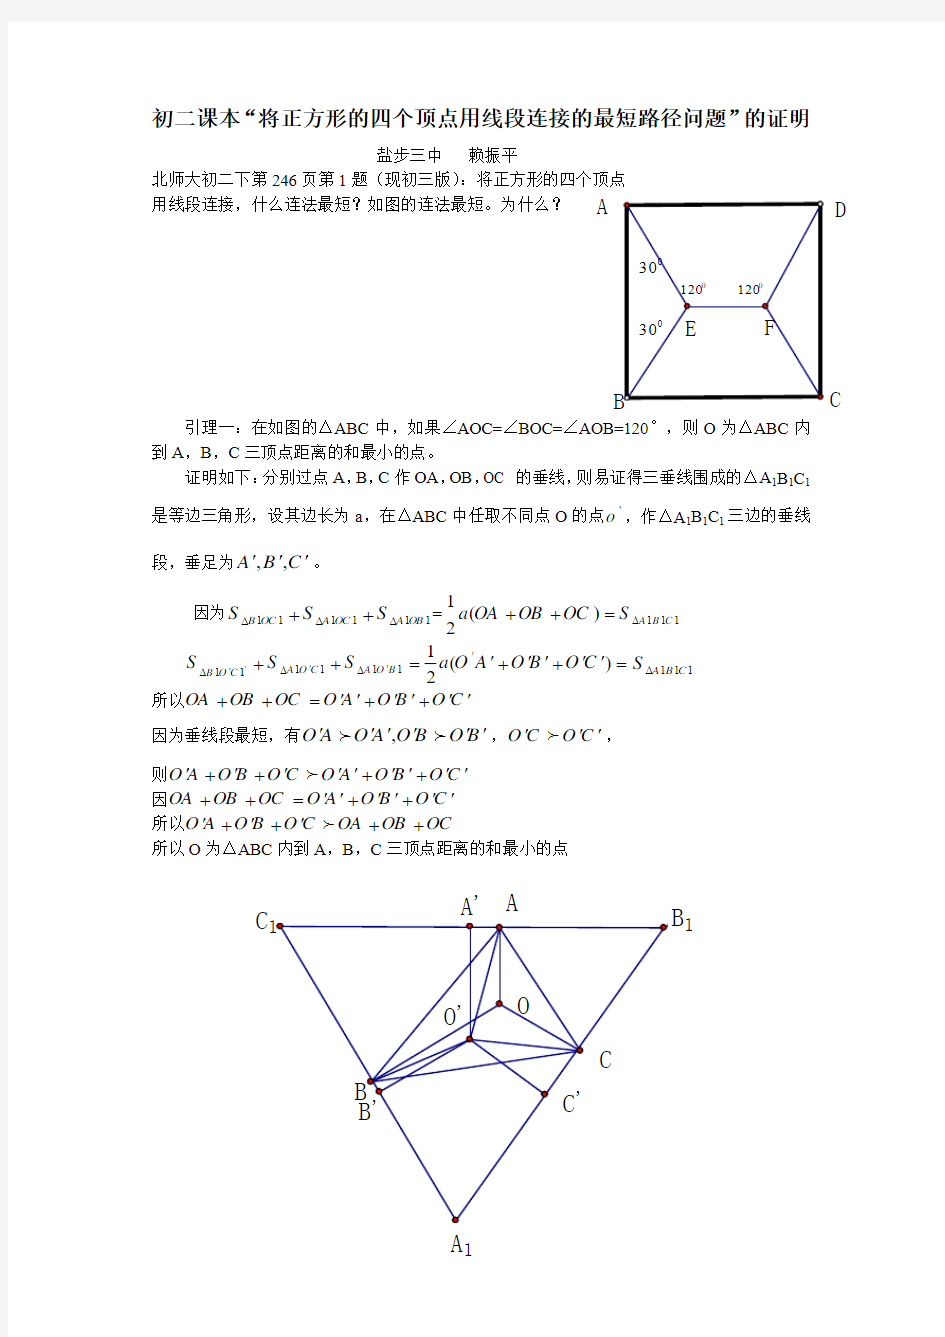 初二课本题到正方形四个顶点最短路径问题的证明